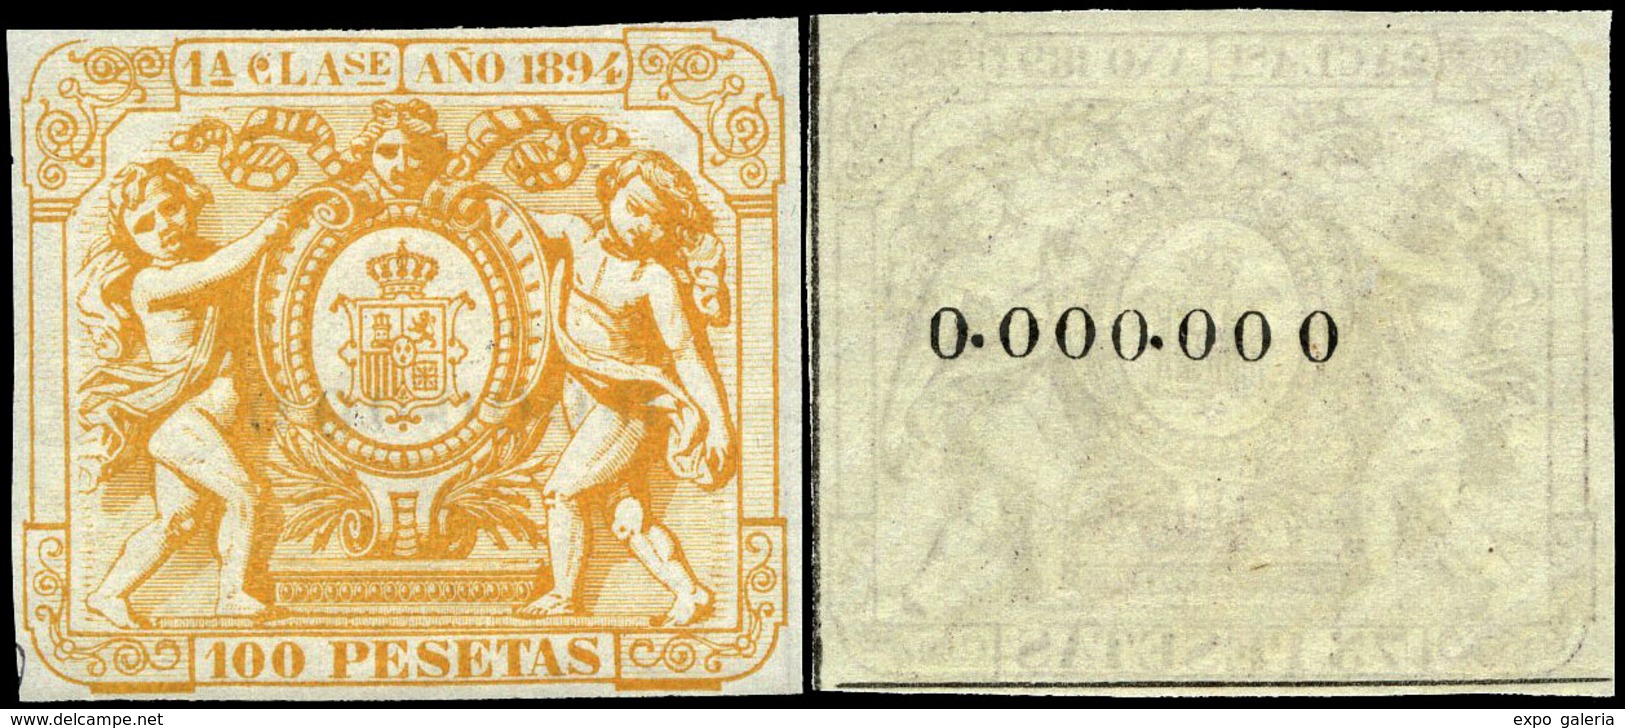 Alemany 389/401 - 1894. Pólizas. 13 Valores. Serie Completa Con Numeración 000.000 Al Dorso. Goma Original - Revenue Stamps